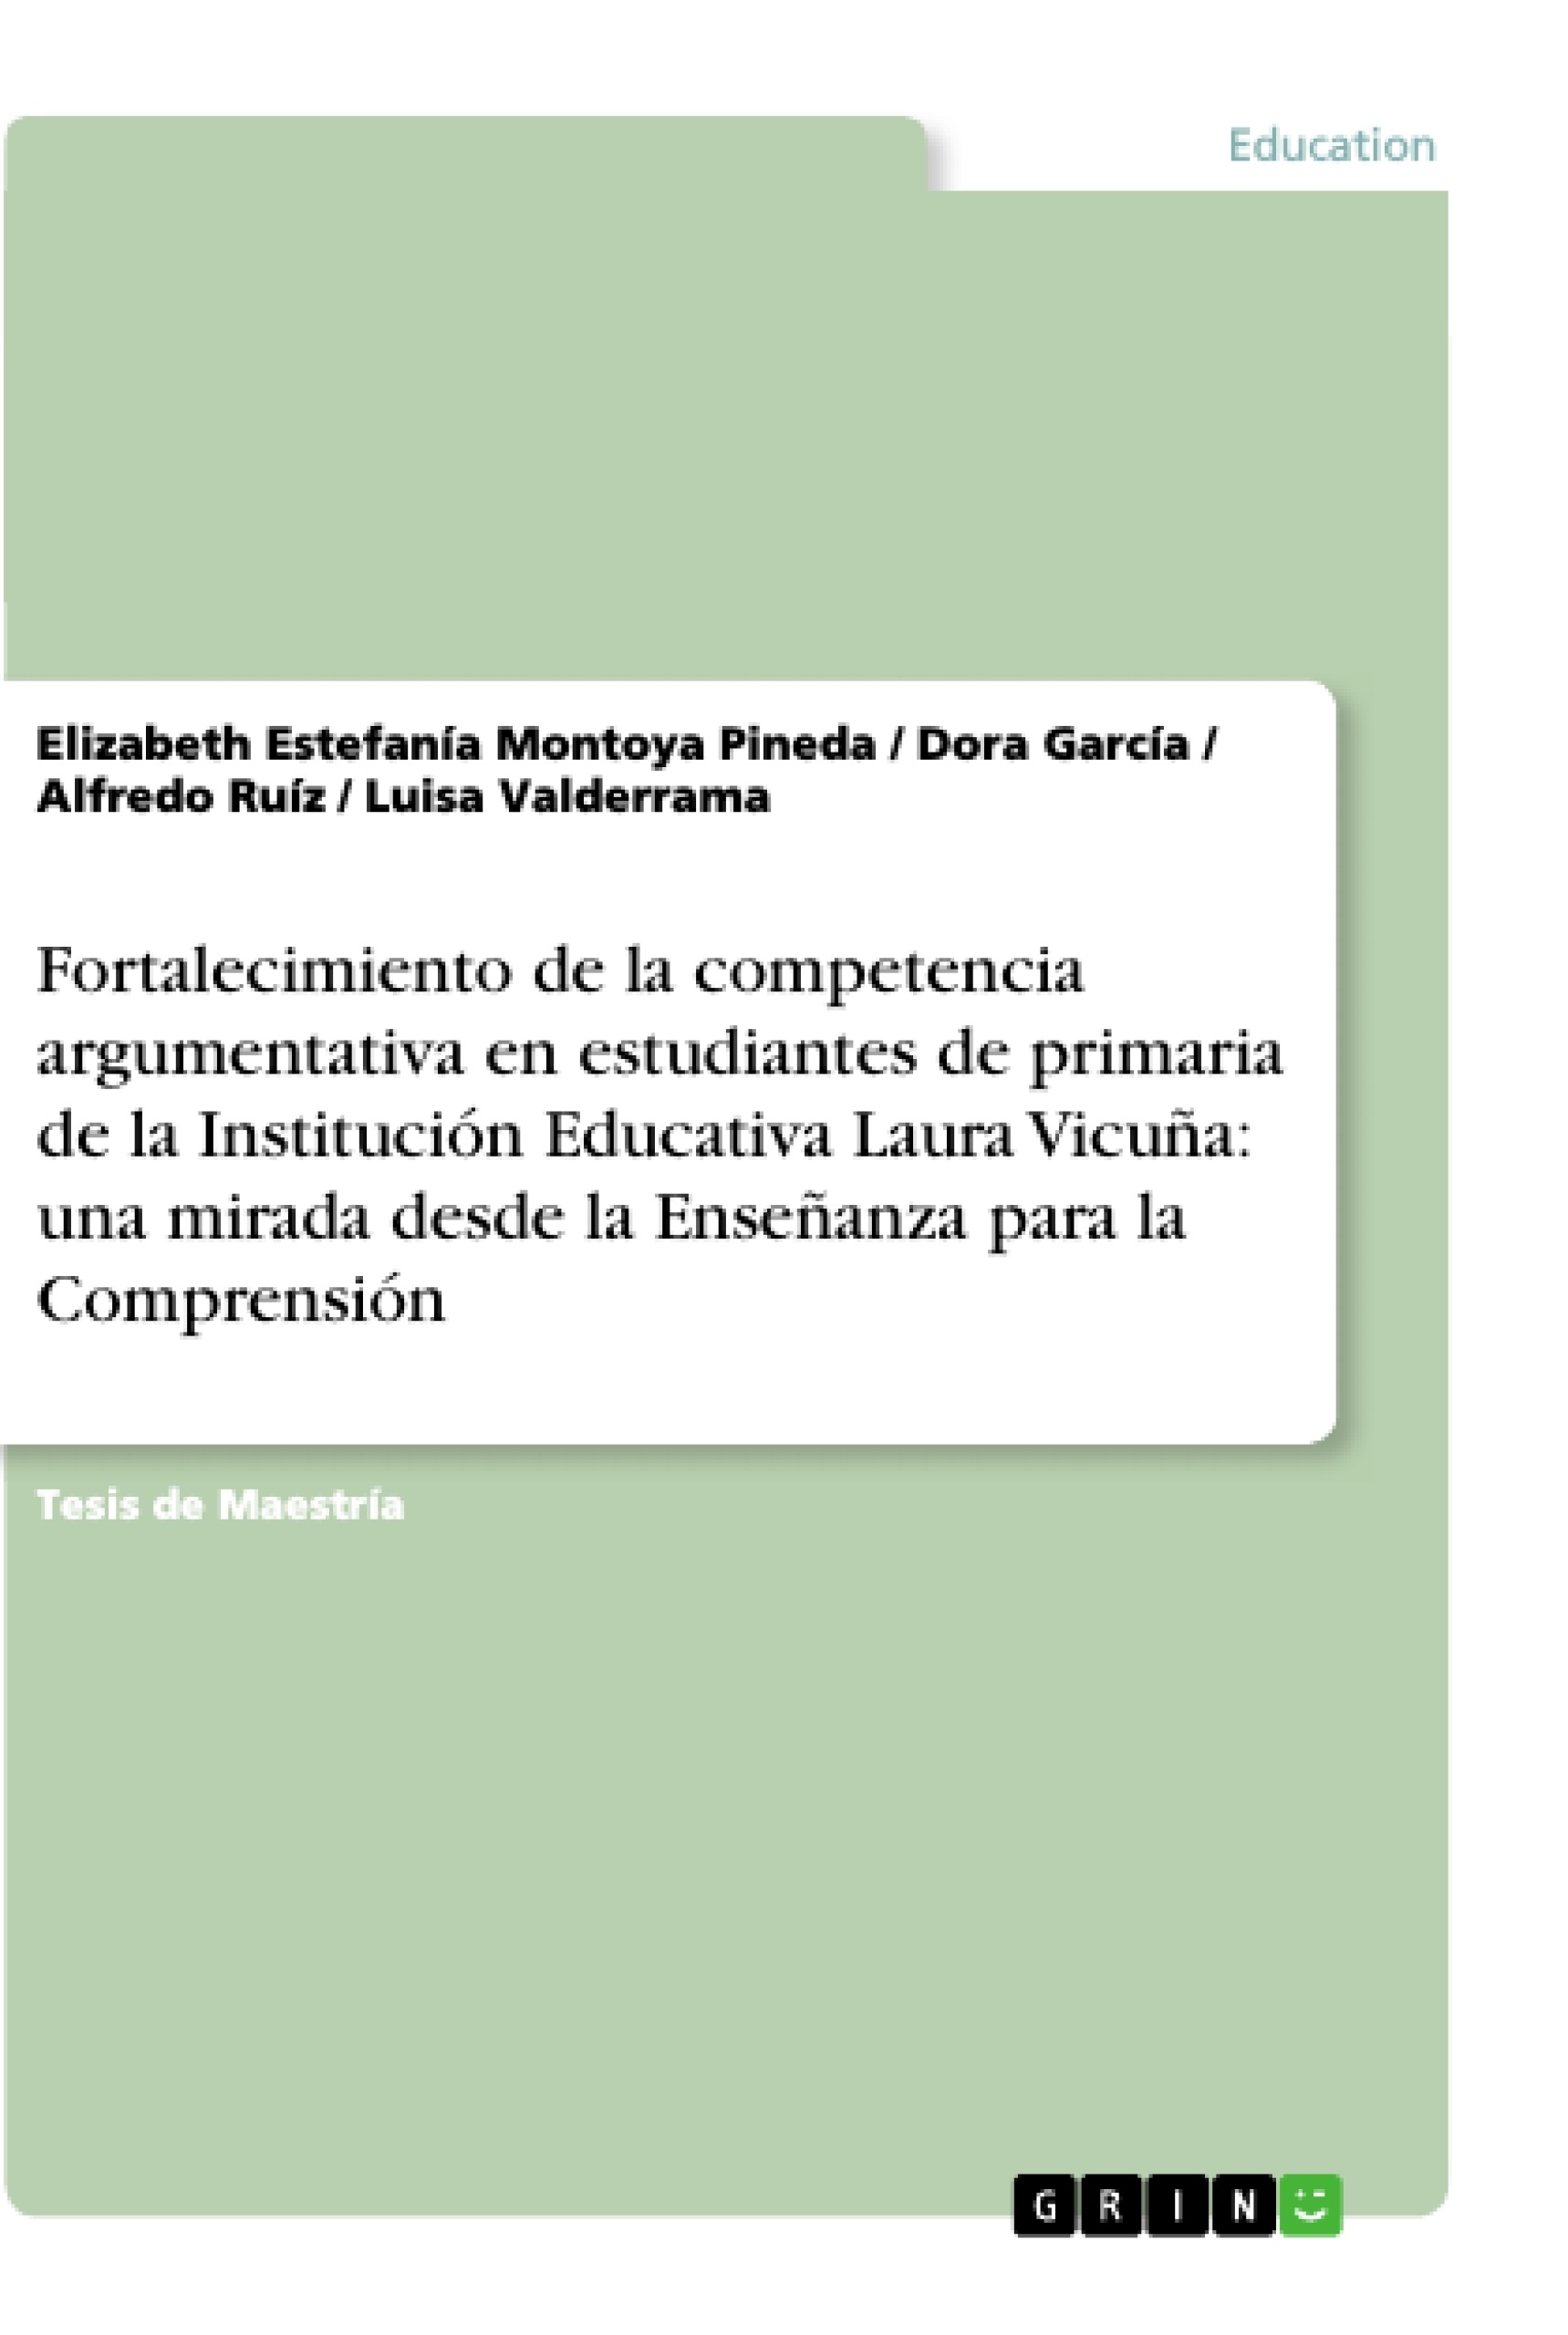 Titel: Fortalecimiento de la competencia argumentativa en estudiantes de primaria de la Institución Educativa Laura Vicuña: una mirada desde la Enseñanza para la Comprensión